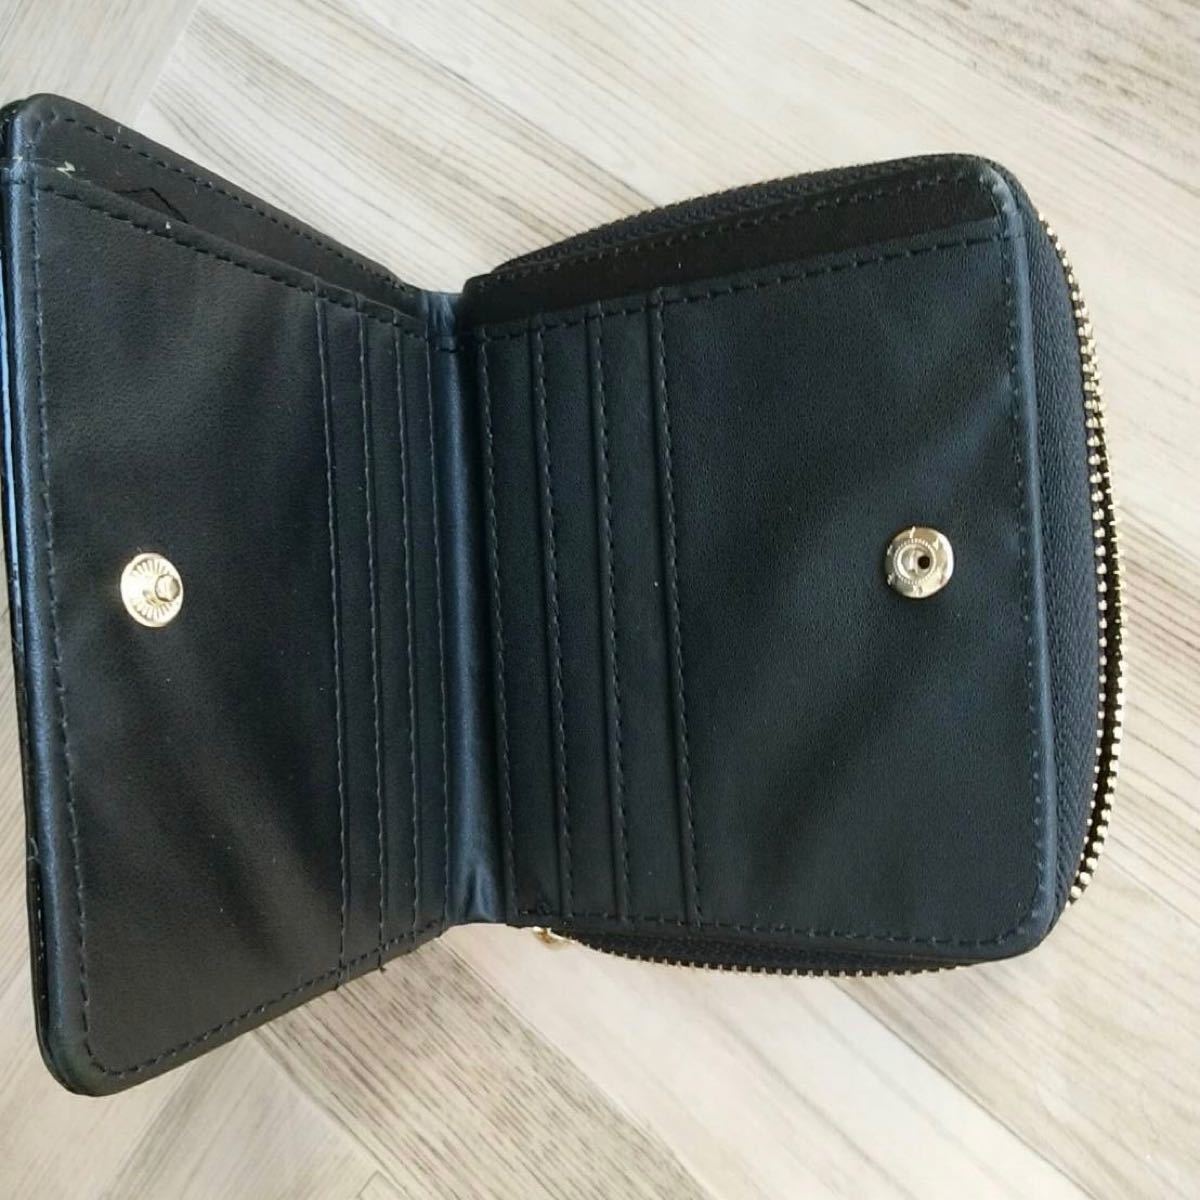 財布 ミニ財布 コンパクト財布 レディース ウォレット 韓国 二つ折り財布 黒